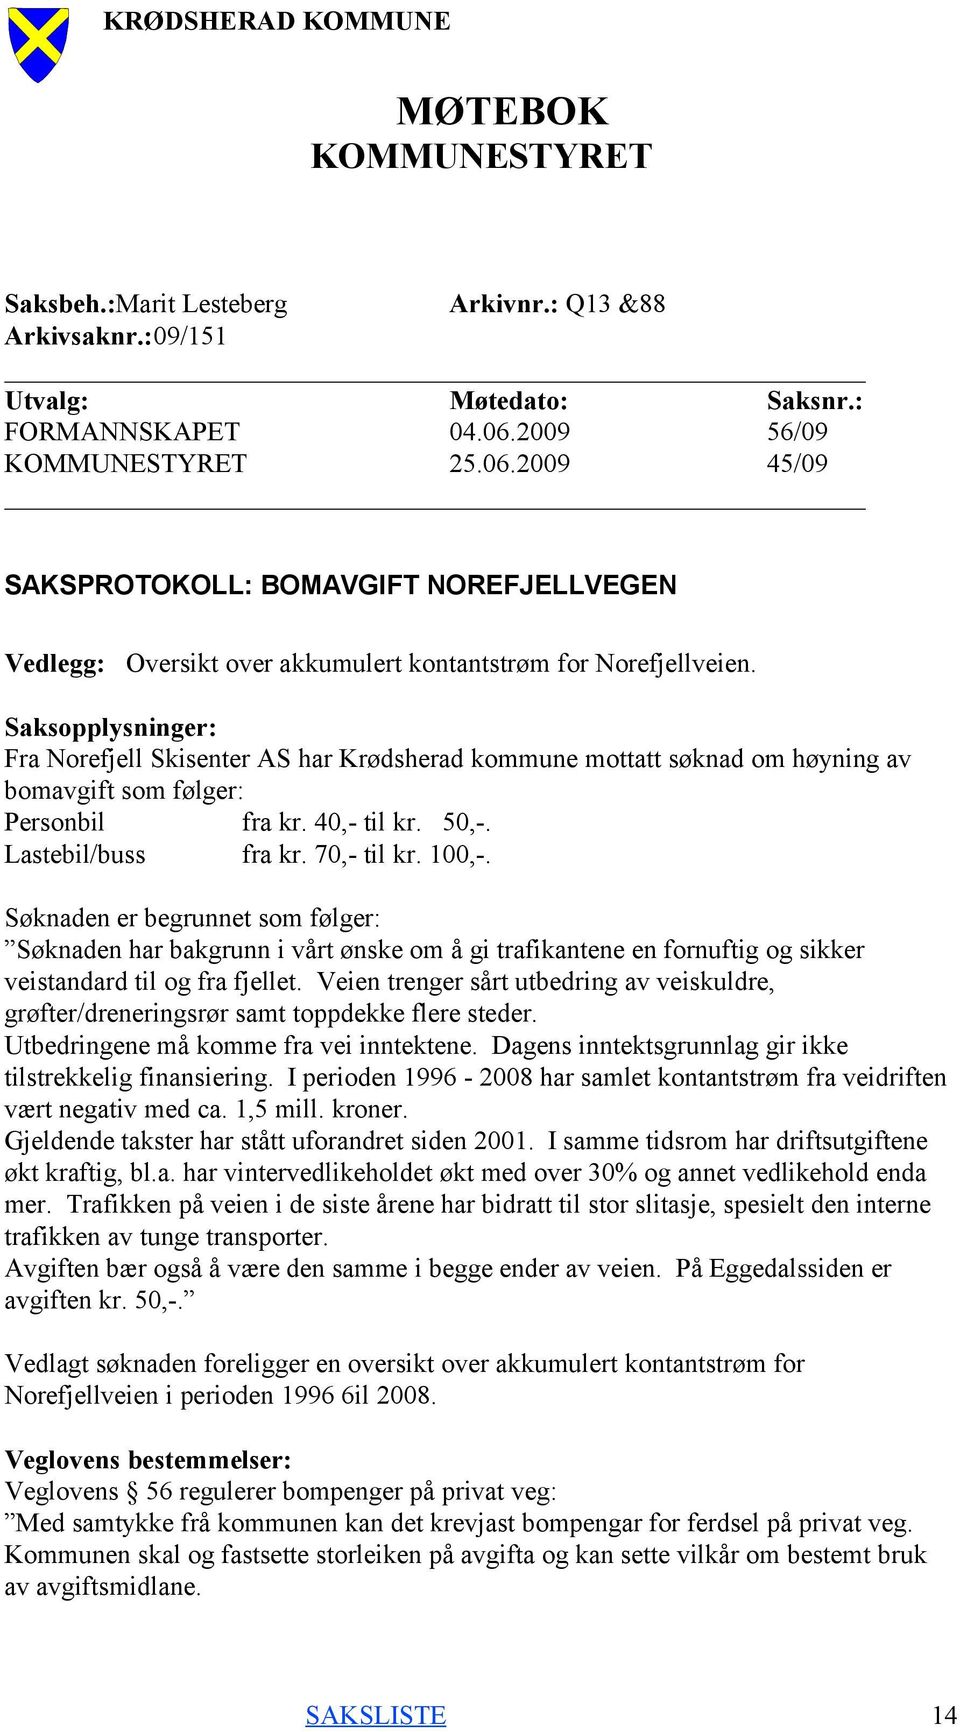 Saksopplysninger: Fra Norefjell Skisenter AS har Krødsherad kommune mottatt søknad om høyning av bomavgift som følger: Personbil fra kr. 40,- til kr. 50,-. Lastebil/buss fra kr. 70,- til kr. 100,-.